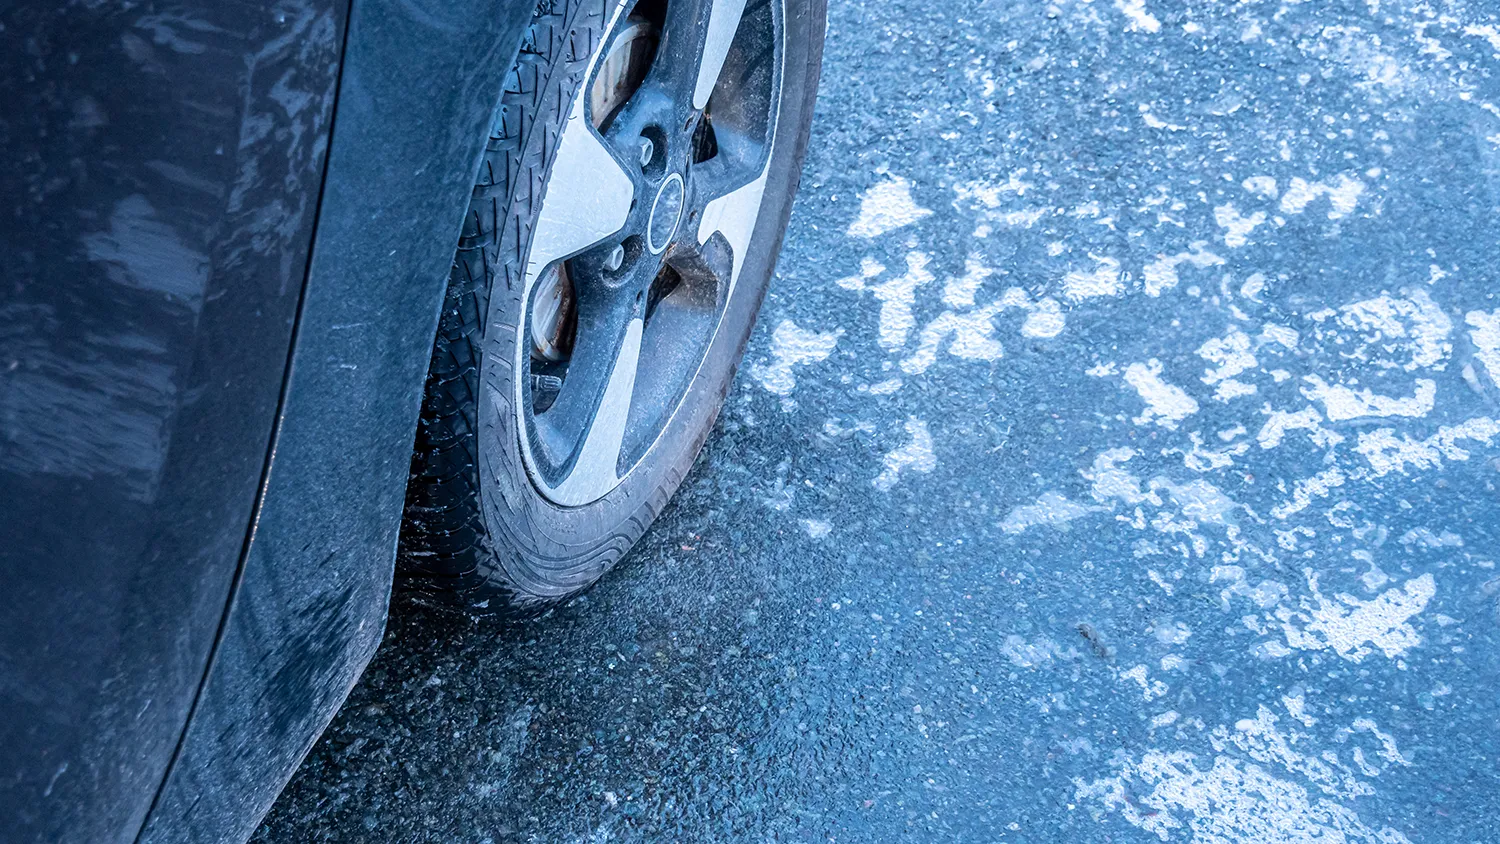 Тормозной путь увеличится в 8 раз: Водителей предупредили о коварстве ледяной корки на дорогах